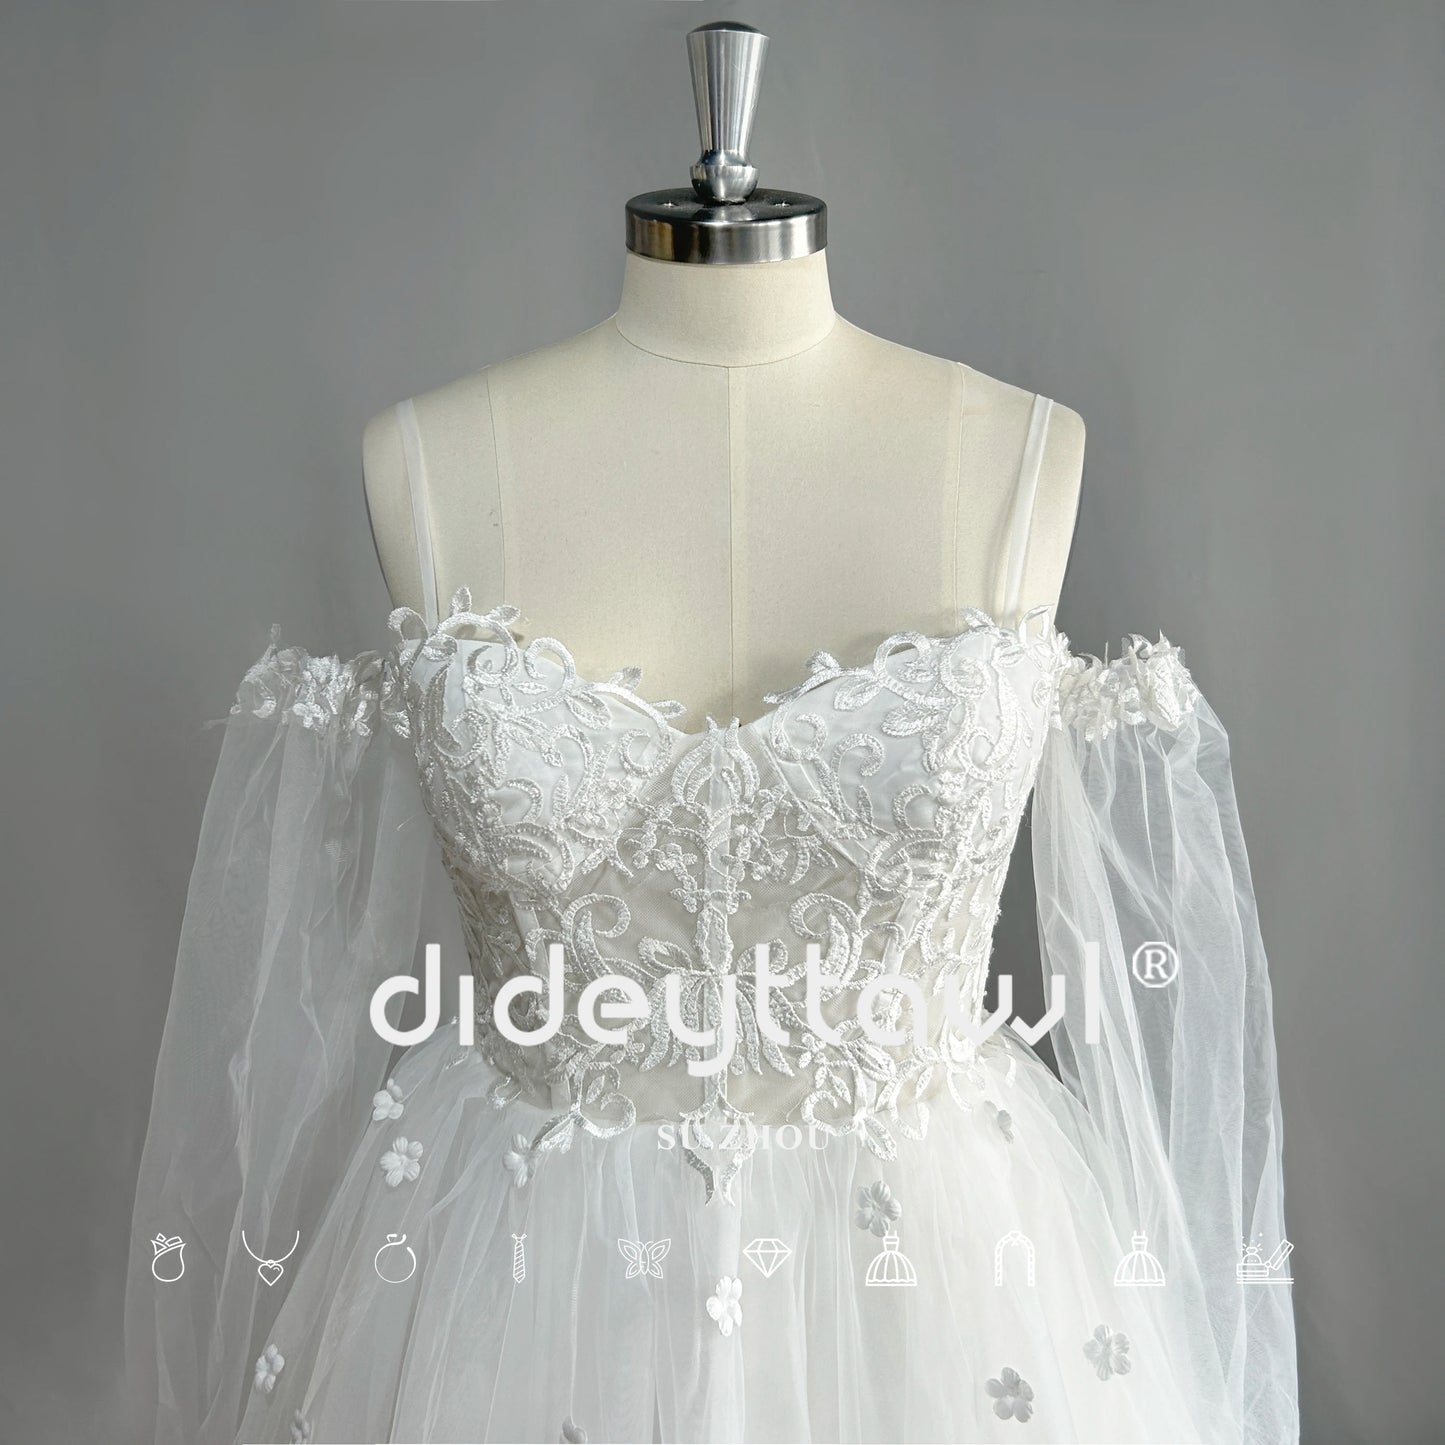 DIDEYTTAWL Vestido de novia corto de tul de manga larga con escote en forma de corazón Mini vestido de novia con hombros descubiertos Imagen Real